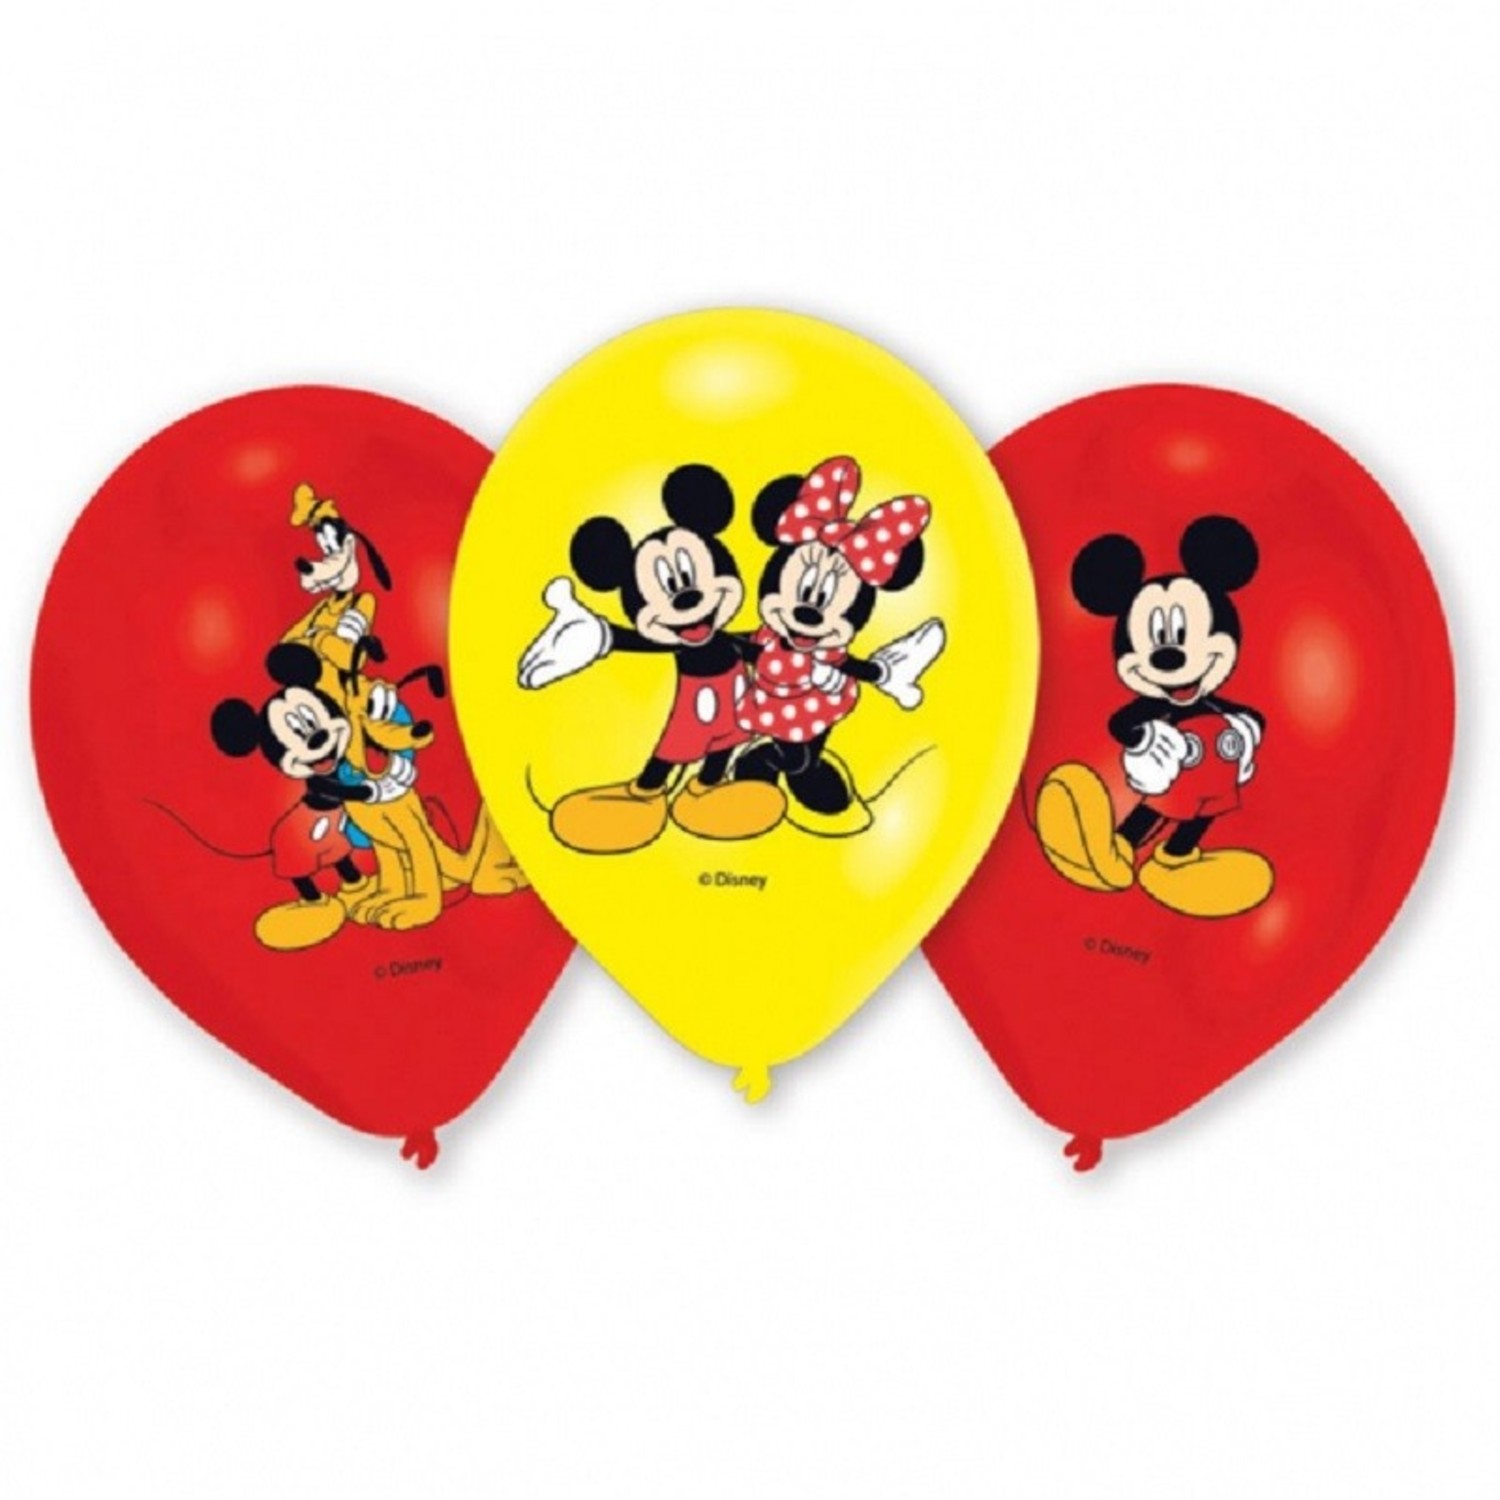 Ballon Mickey 4 kleuren print 6 | Tuf Tuf feestartikelen Tuf-Tuf